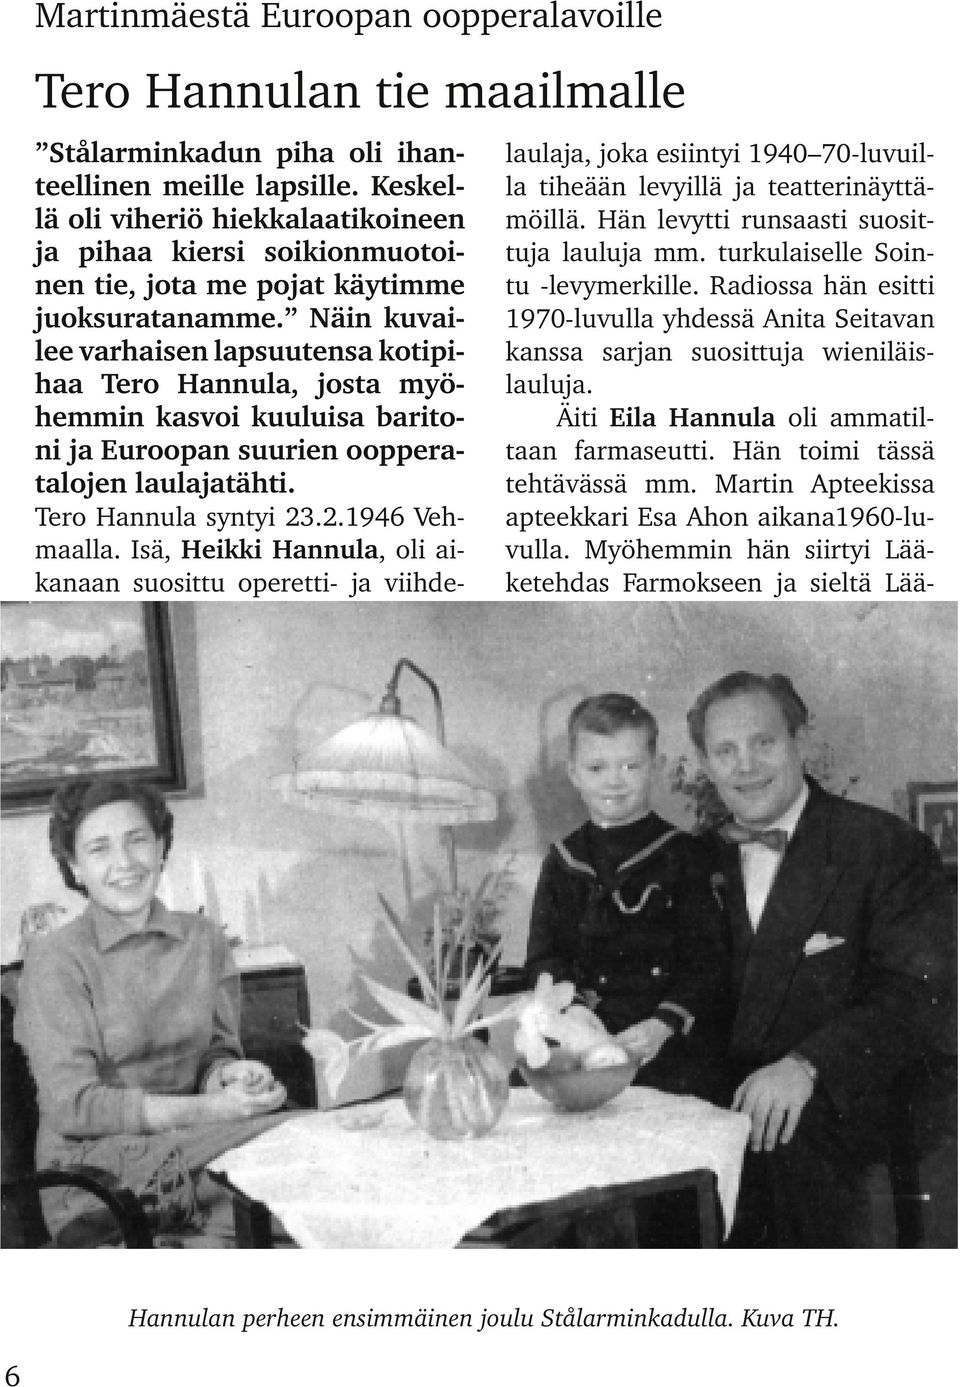 Näin kuvai lee varhaisen lapsuutensa kotipi haa Tero Hannula, josta myö hemmin kasvoi kuuluisa barito ni ja Euroopan suurien ooppera talojen laulajatähti. Tero Hannula syntyi 23.2.1946 Veh maalla.